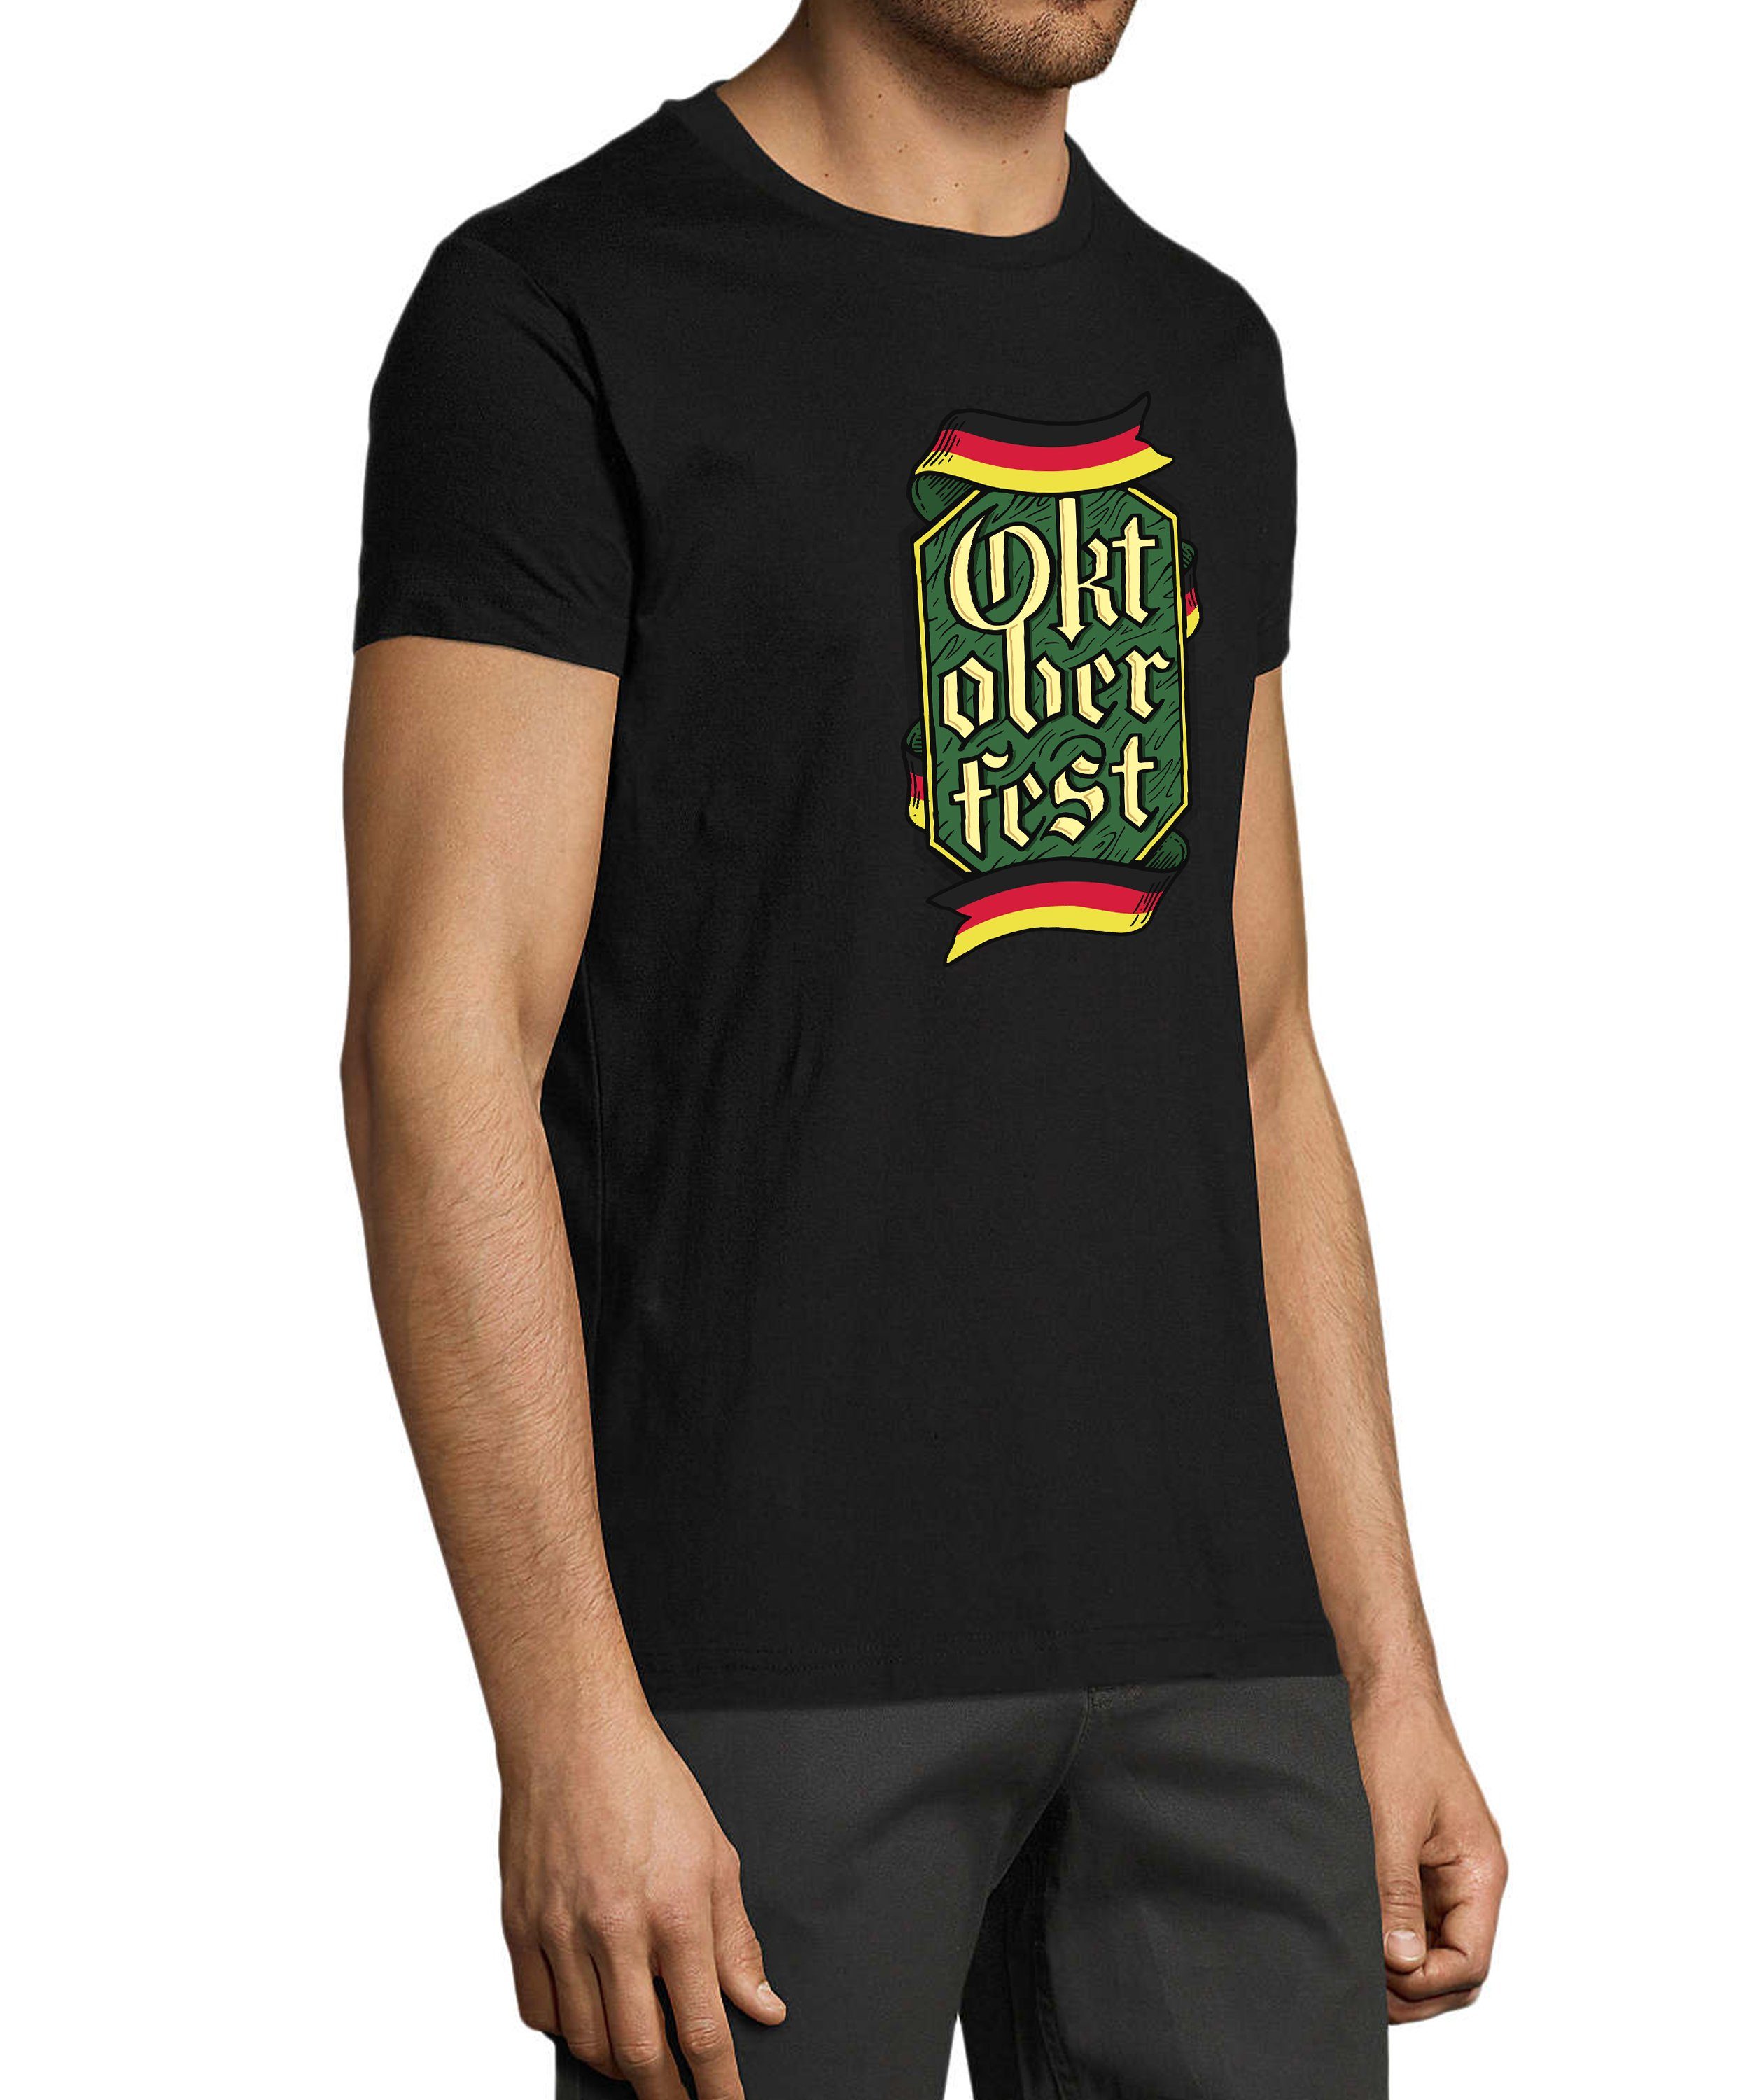 Regular Shirt Party Oktoberfest Aufdruck mit Baumwollshirt i323 Fit, Herren - T-Shirt MyDesign24 T-Shirt schwarz Trinkshirt